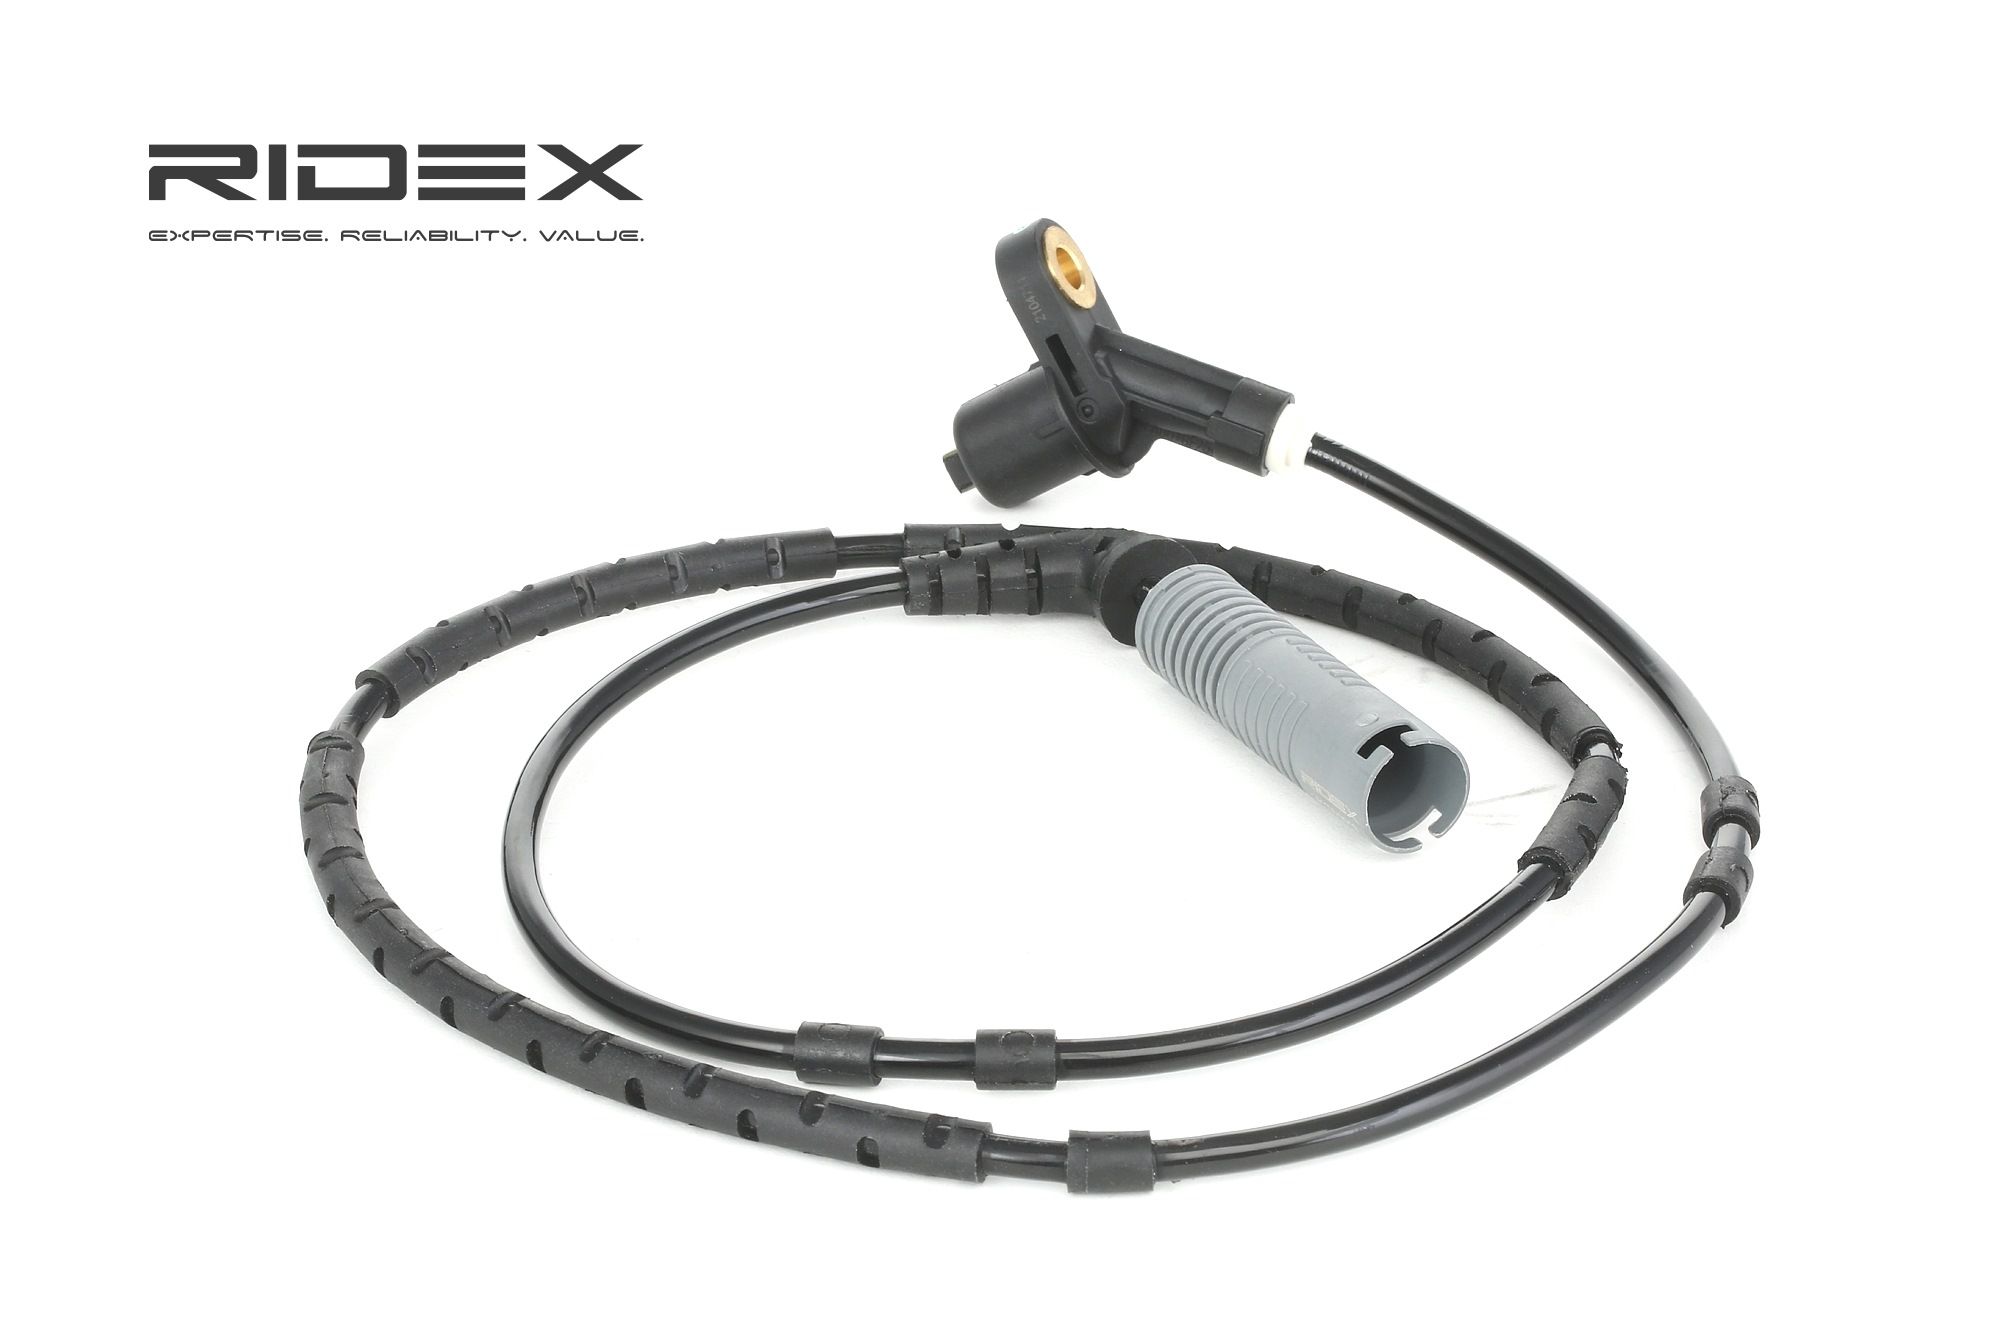 RIDEX 412W0013 originales BMW Sensor de velocidad de rueda eje trasero ambos lados